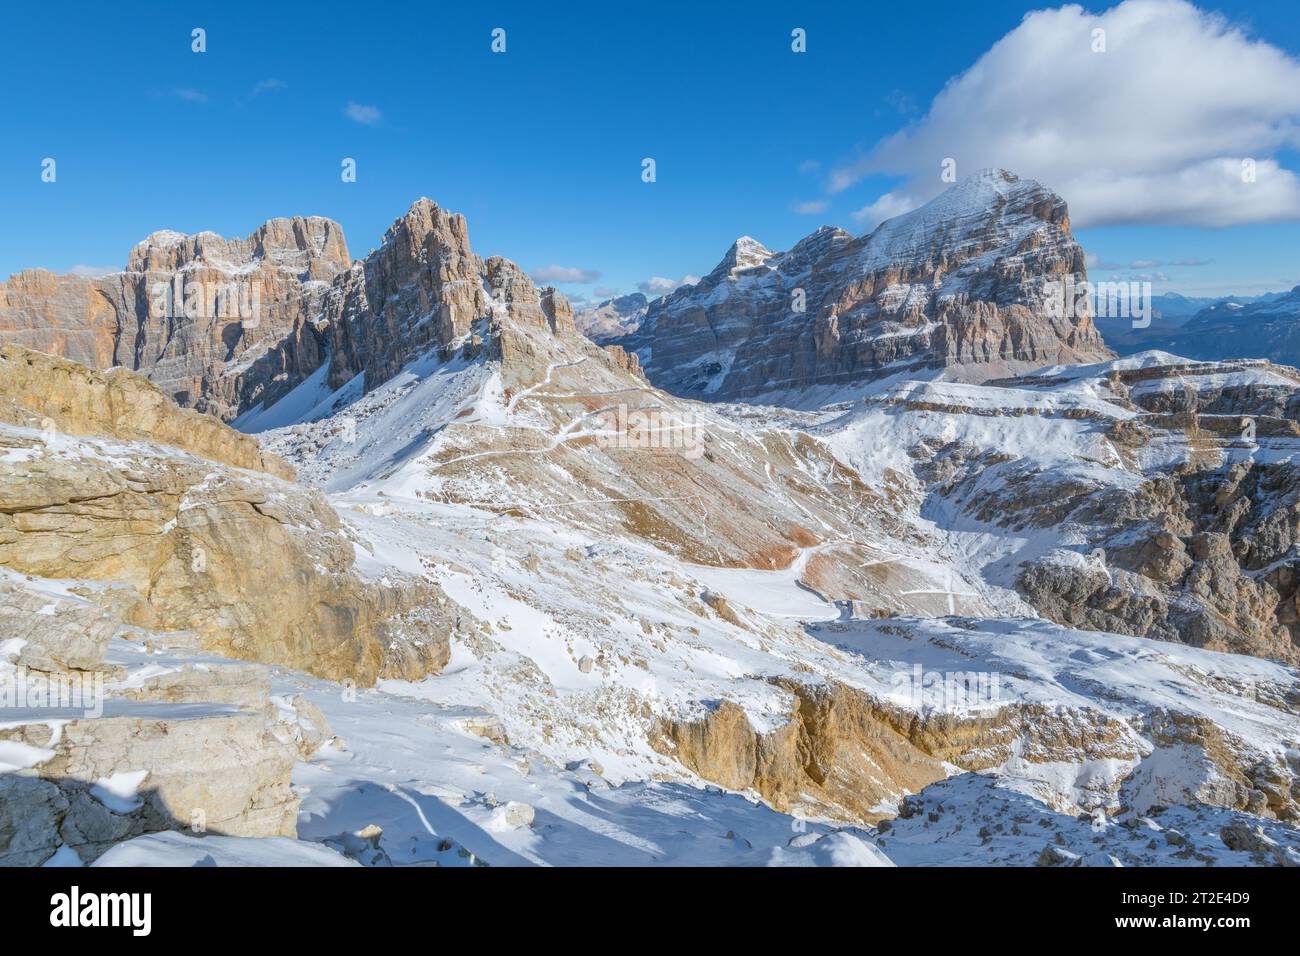 Vue panoramique depuis le sommet du mont Lagazuoi dans les Dolomites italiennes. Paysage montagneux enneigé surplombant les montagnes Tofane. Banque D'Images